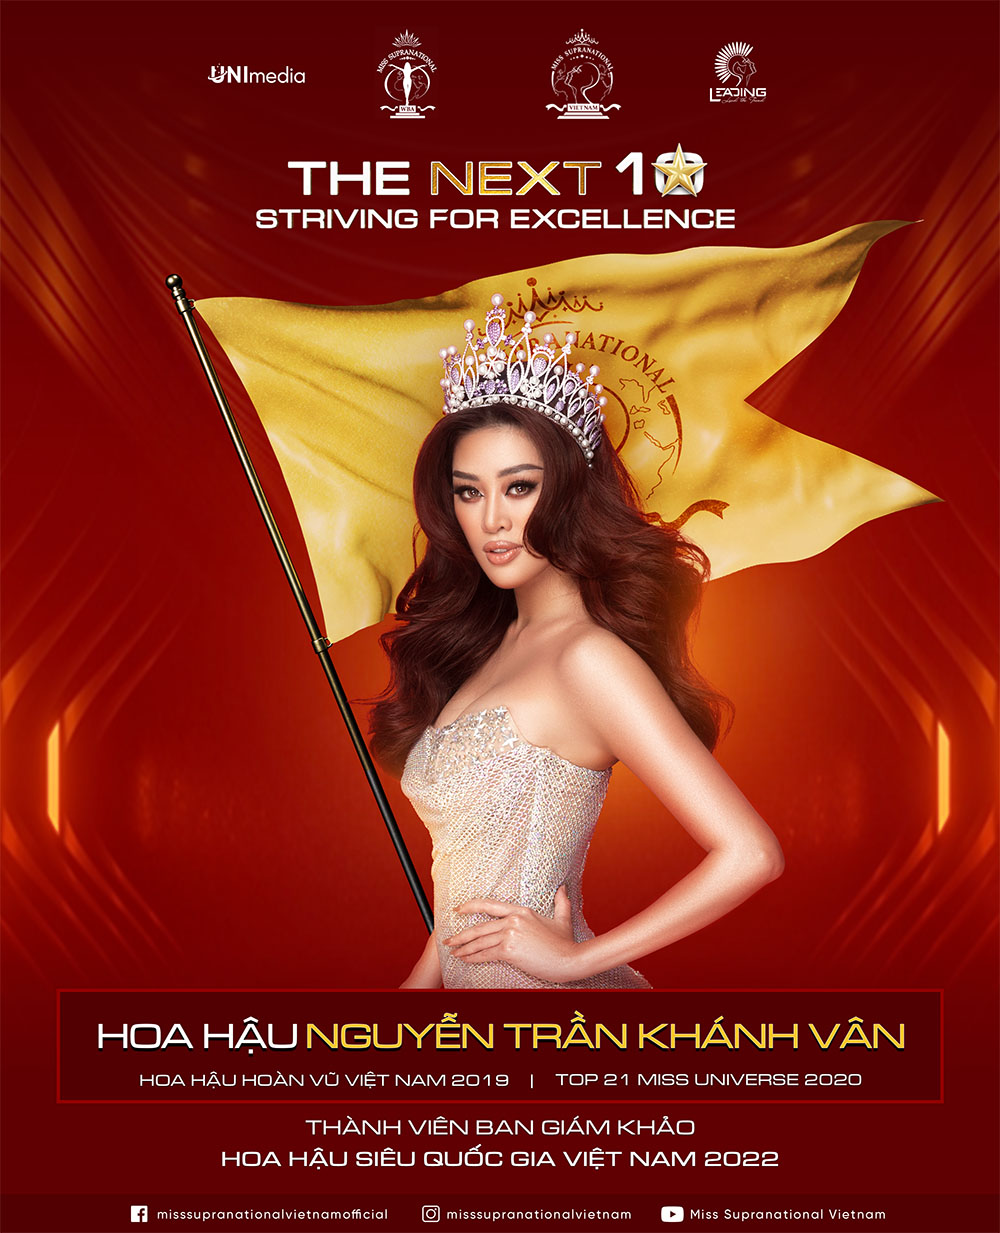 Ban giám khảo Hoa hậu siêu quốc gia Việt Nam 2022 là ai? Cập nhật